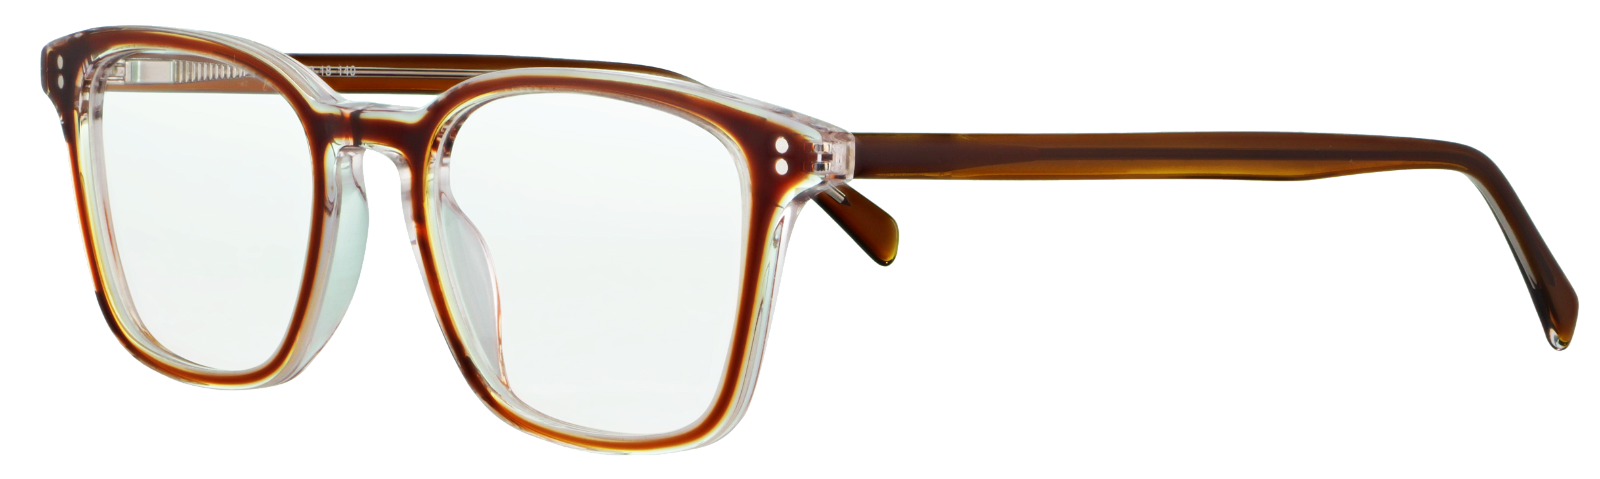 Eyebar Brille Mailand